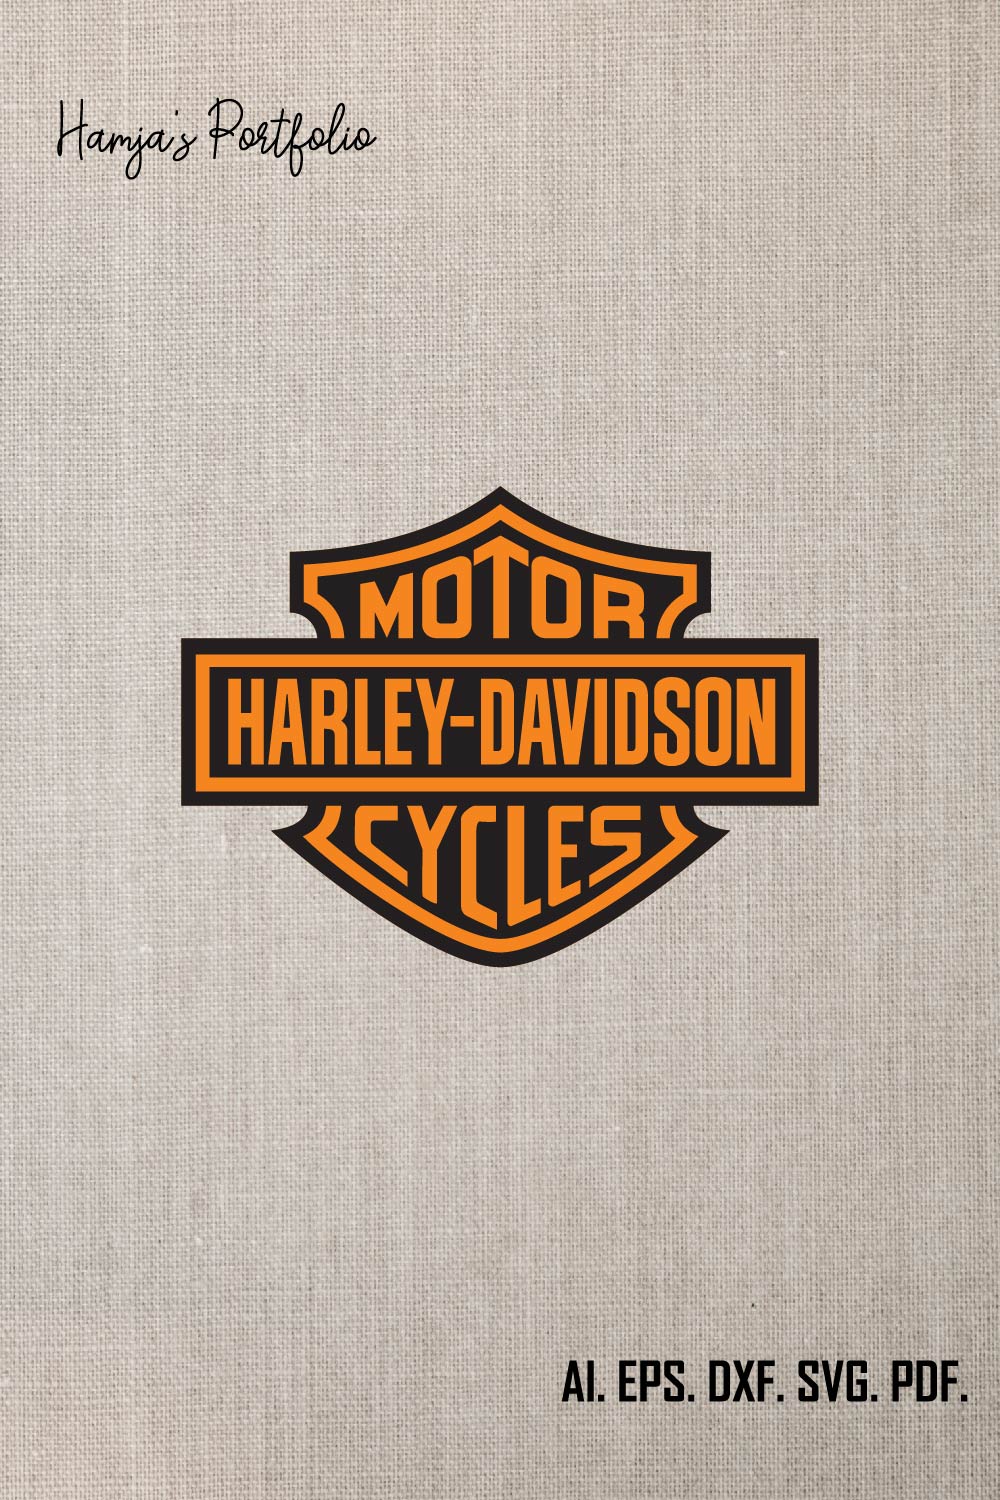 Harley Davidson, Harley Davidson SVG, Harley Davidson PNG, Harley Davidson logo, Harley Davidson, Harley Davidson cricut pinterest preview image.